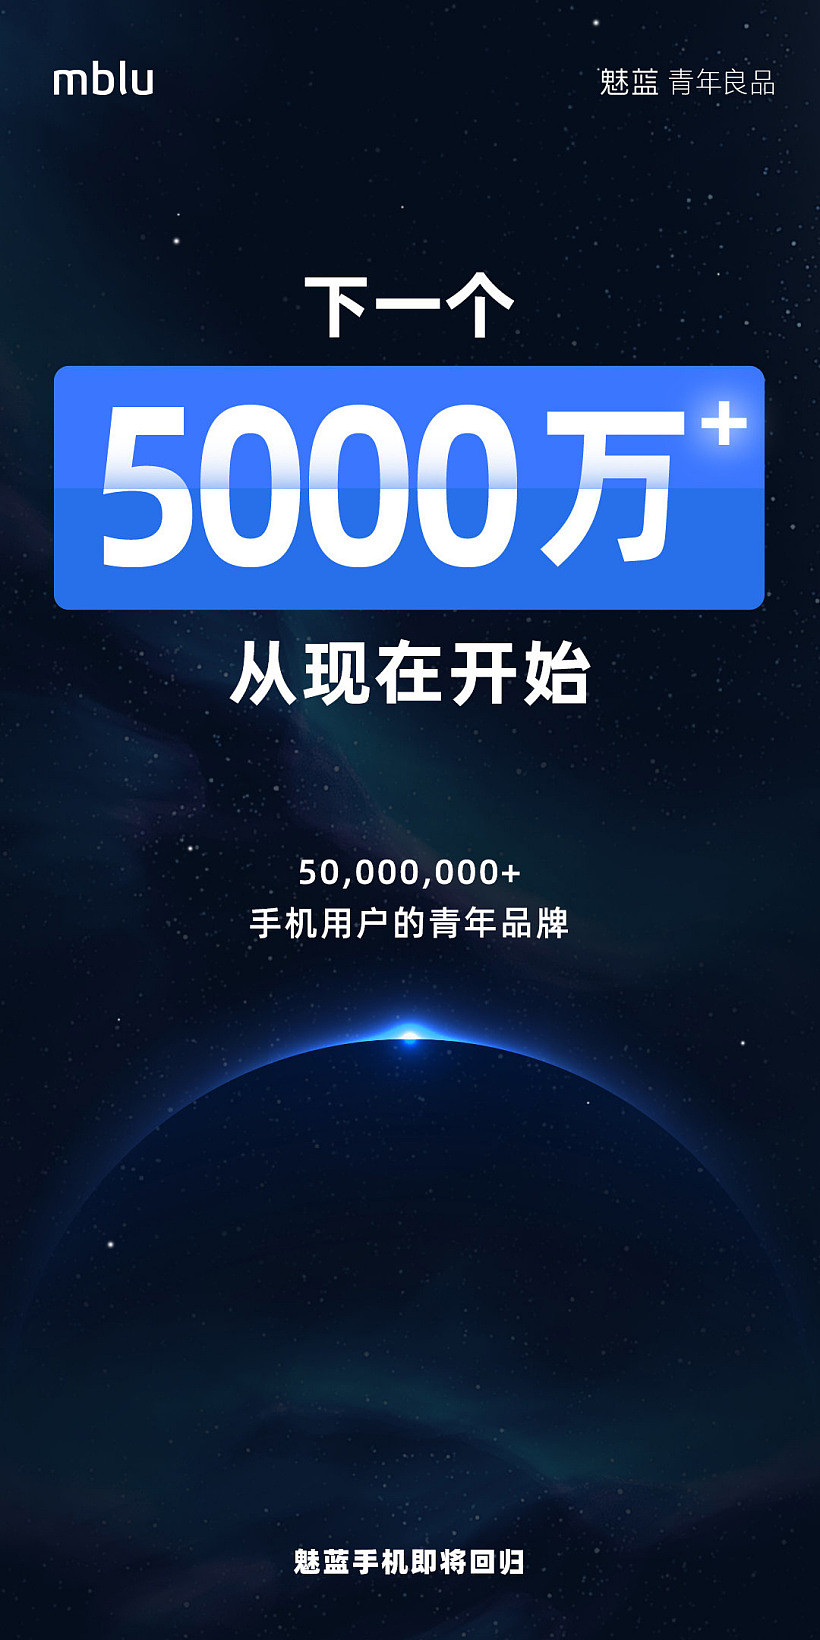 魅蓝手机：下一个 5000 万销量目标从现在开始 - 1